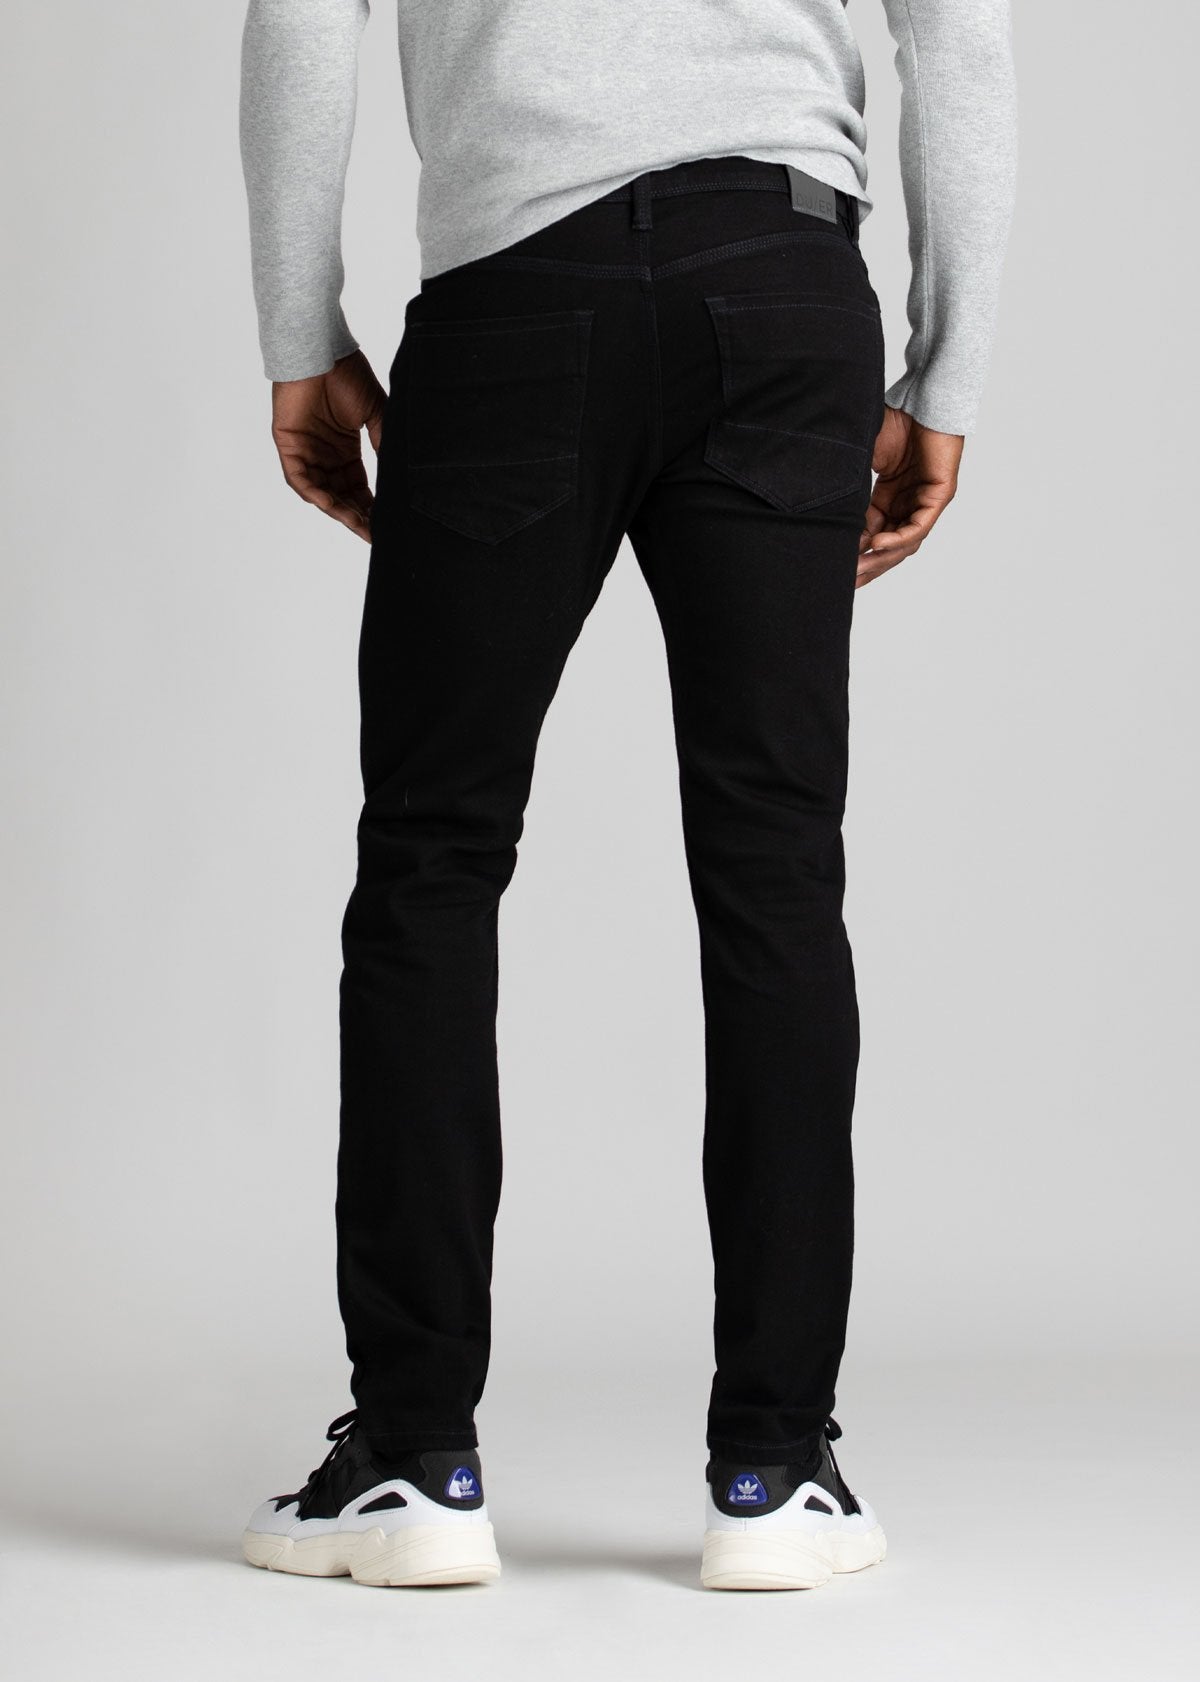 black water resistant slim jeans back view